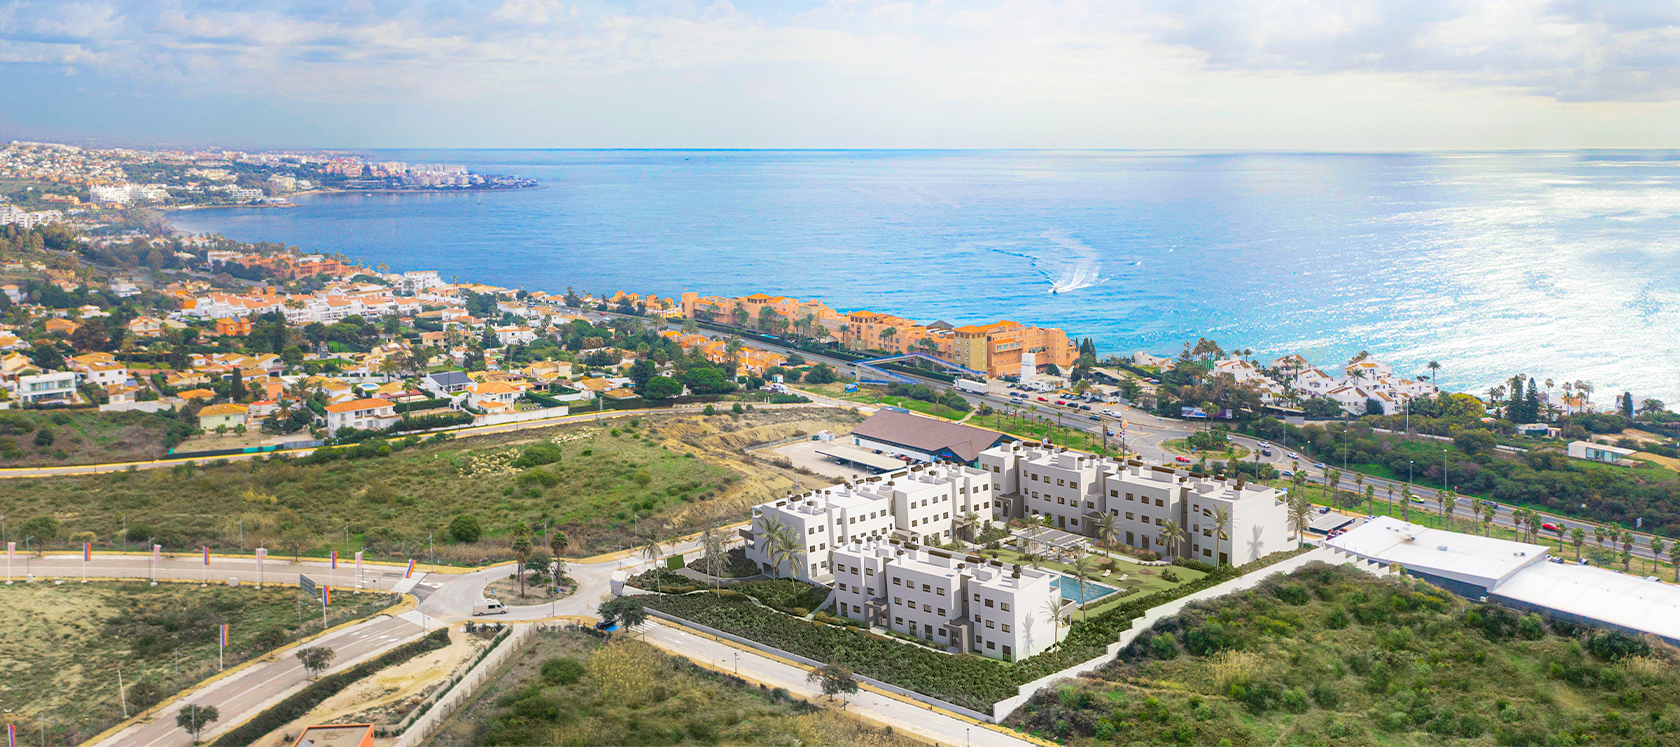 New developments in Estepona, Malaga. Célere Sea Views